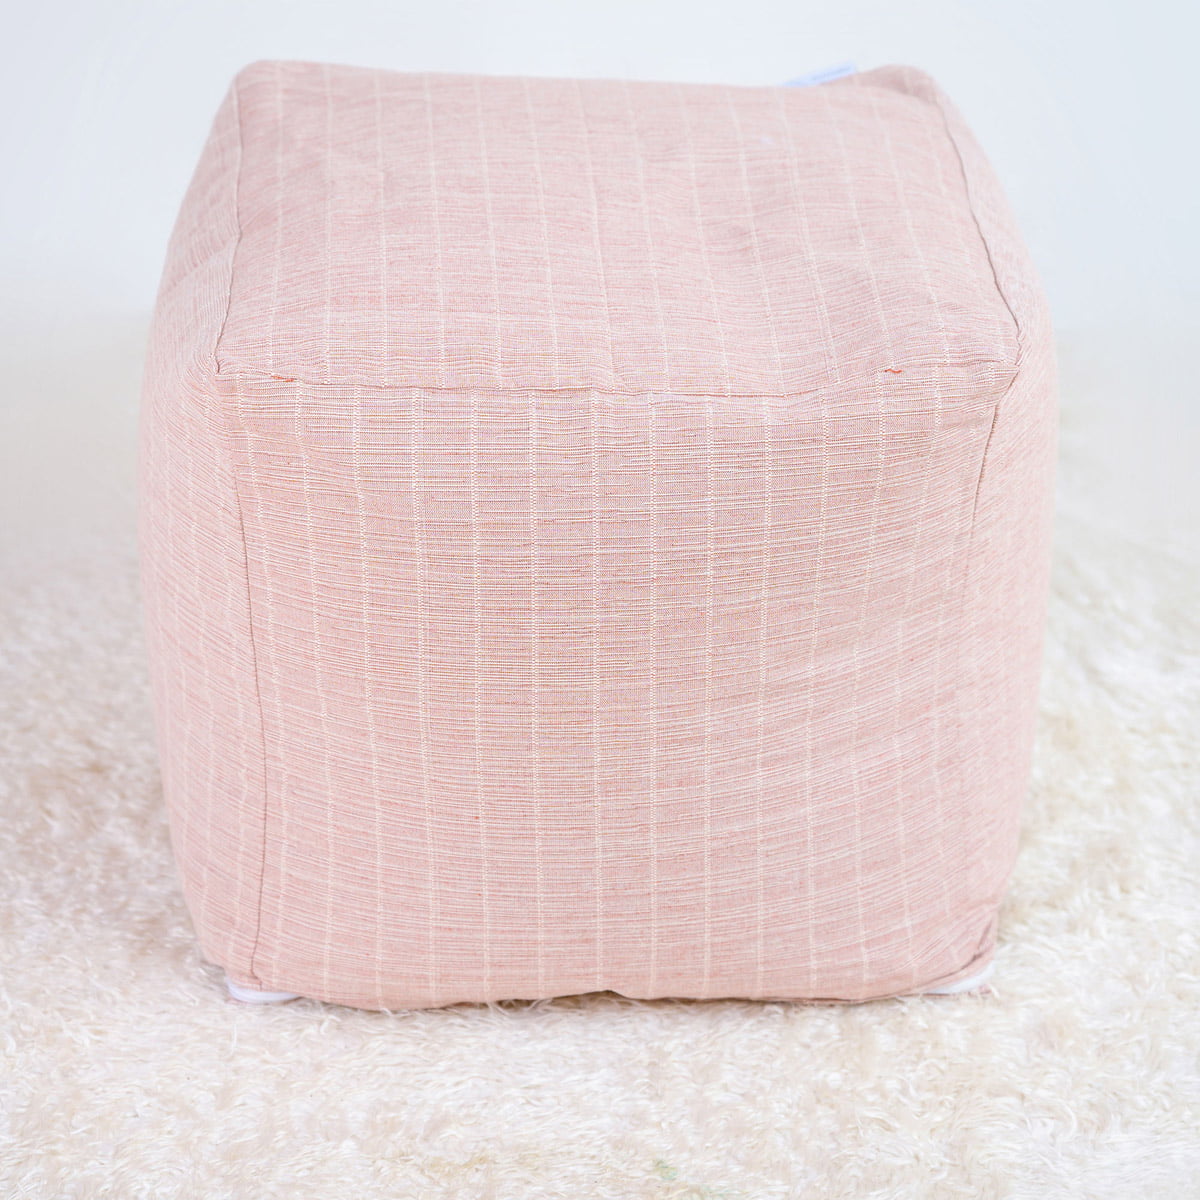 MILSON pale pink pouf / ottoman